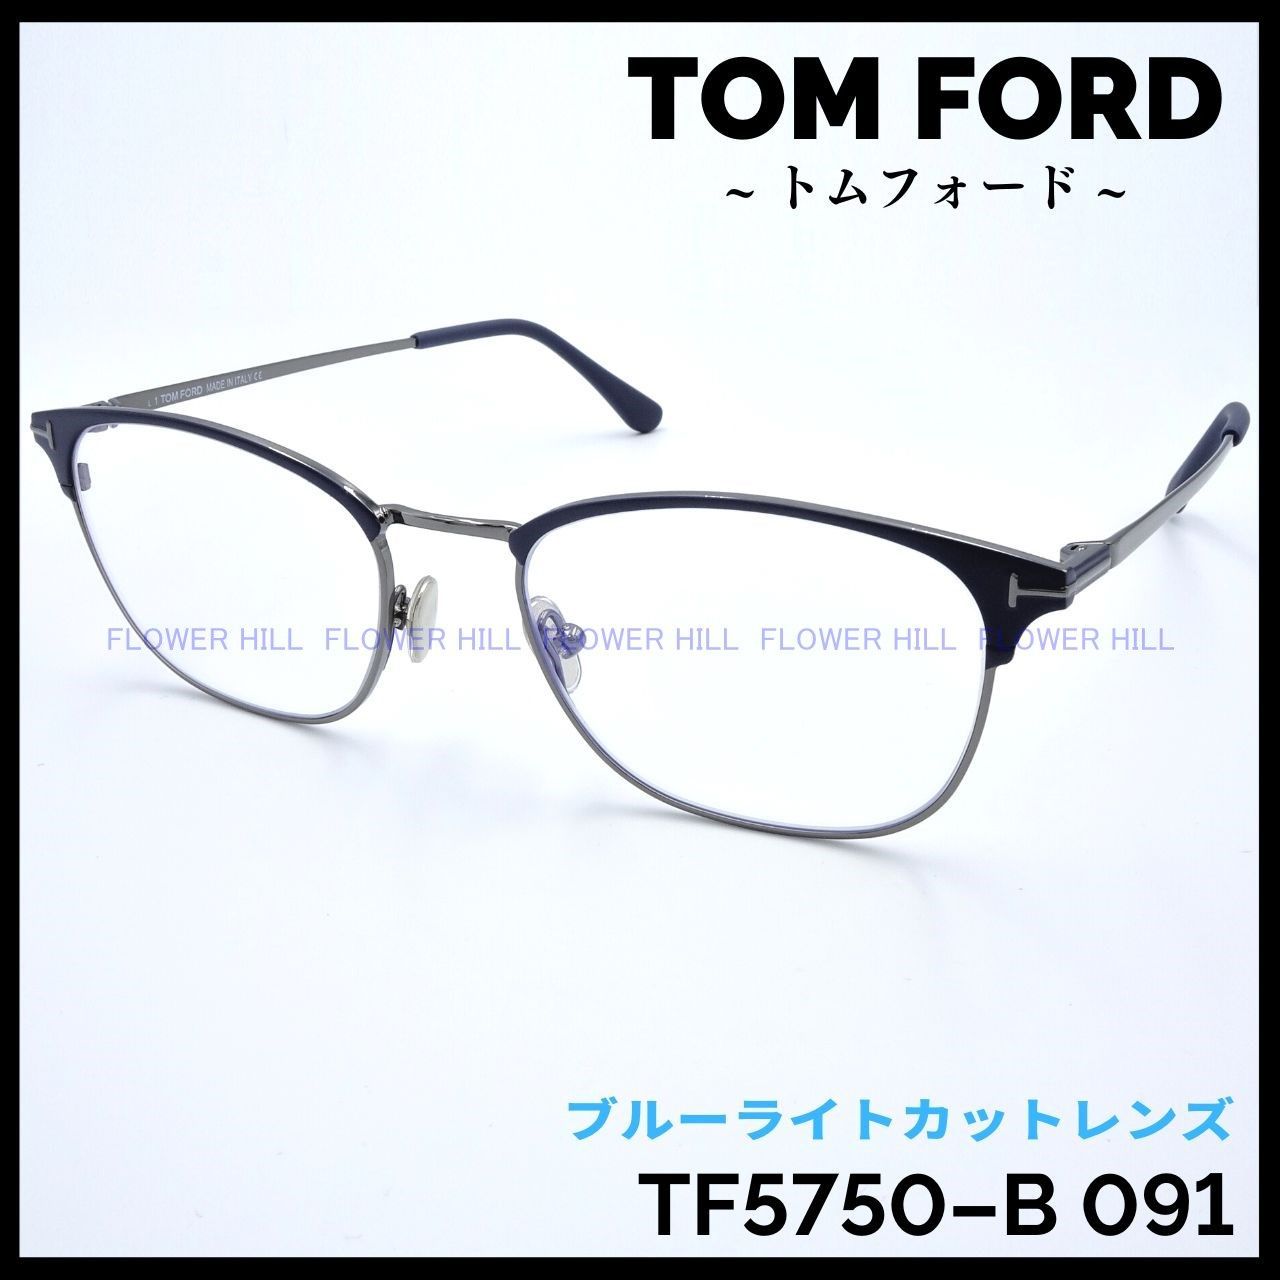 TOM FORD トムフォード TF5750-B 091 メガネ フレーム ブルーグレー ...